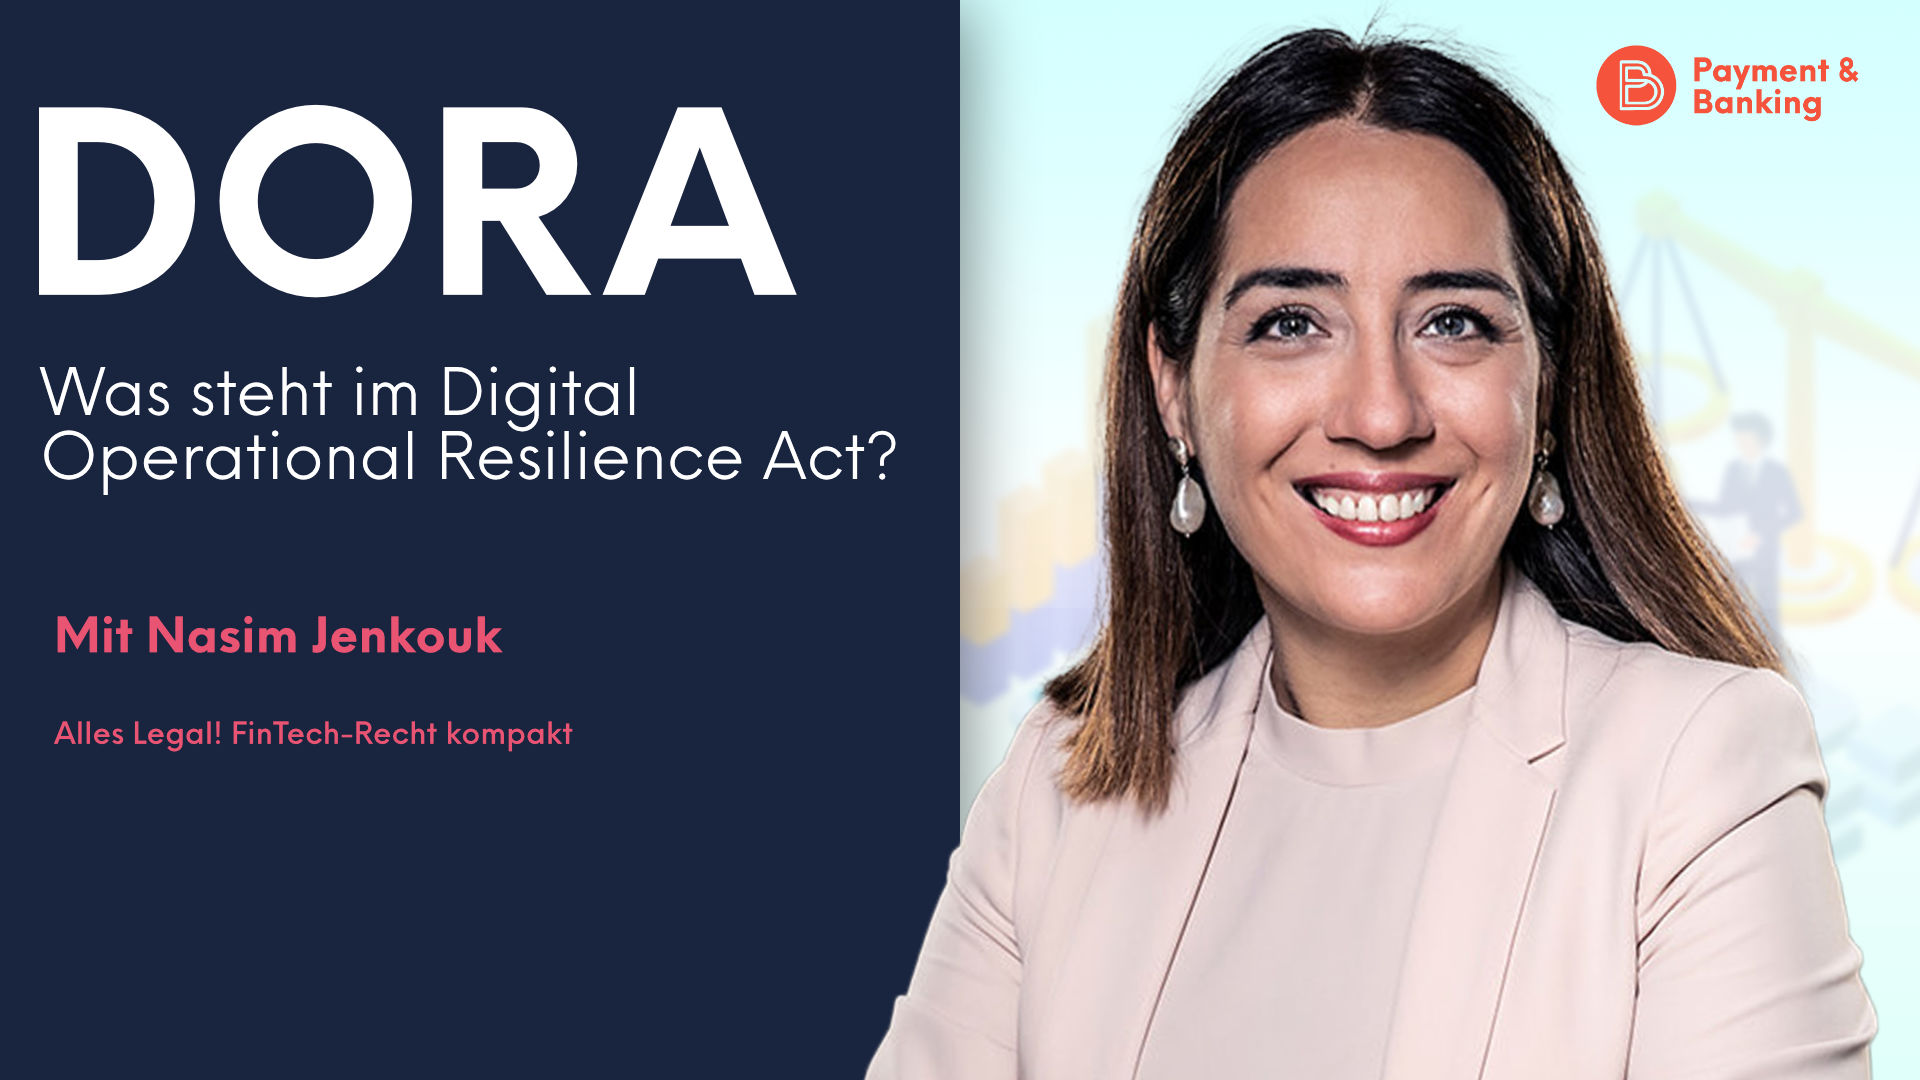 Nasim Jenkouk von PayTechLaw erklärt, was im Digital Operational Resilience Act der Europäischen Kommission steht. Sie führt aus, wie DORA mit anderen Regularien zusammenspielt, ob bisherige Verordnungen in der DORA aufgehen und was die Kapitel und Klauseln des Digital Operational Resilience Act regeln.